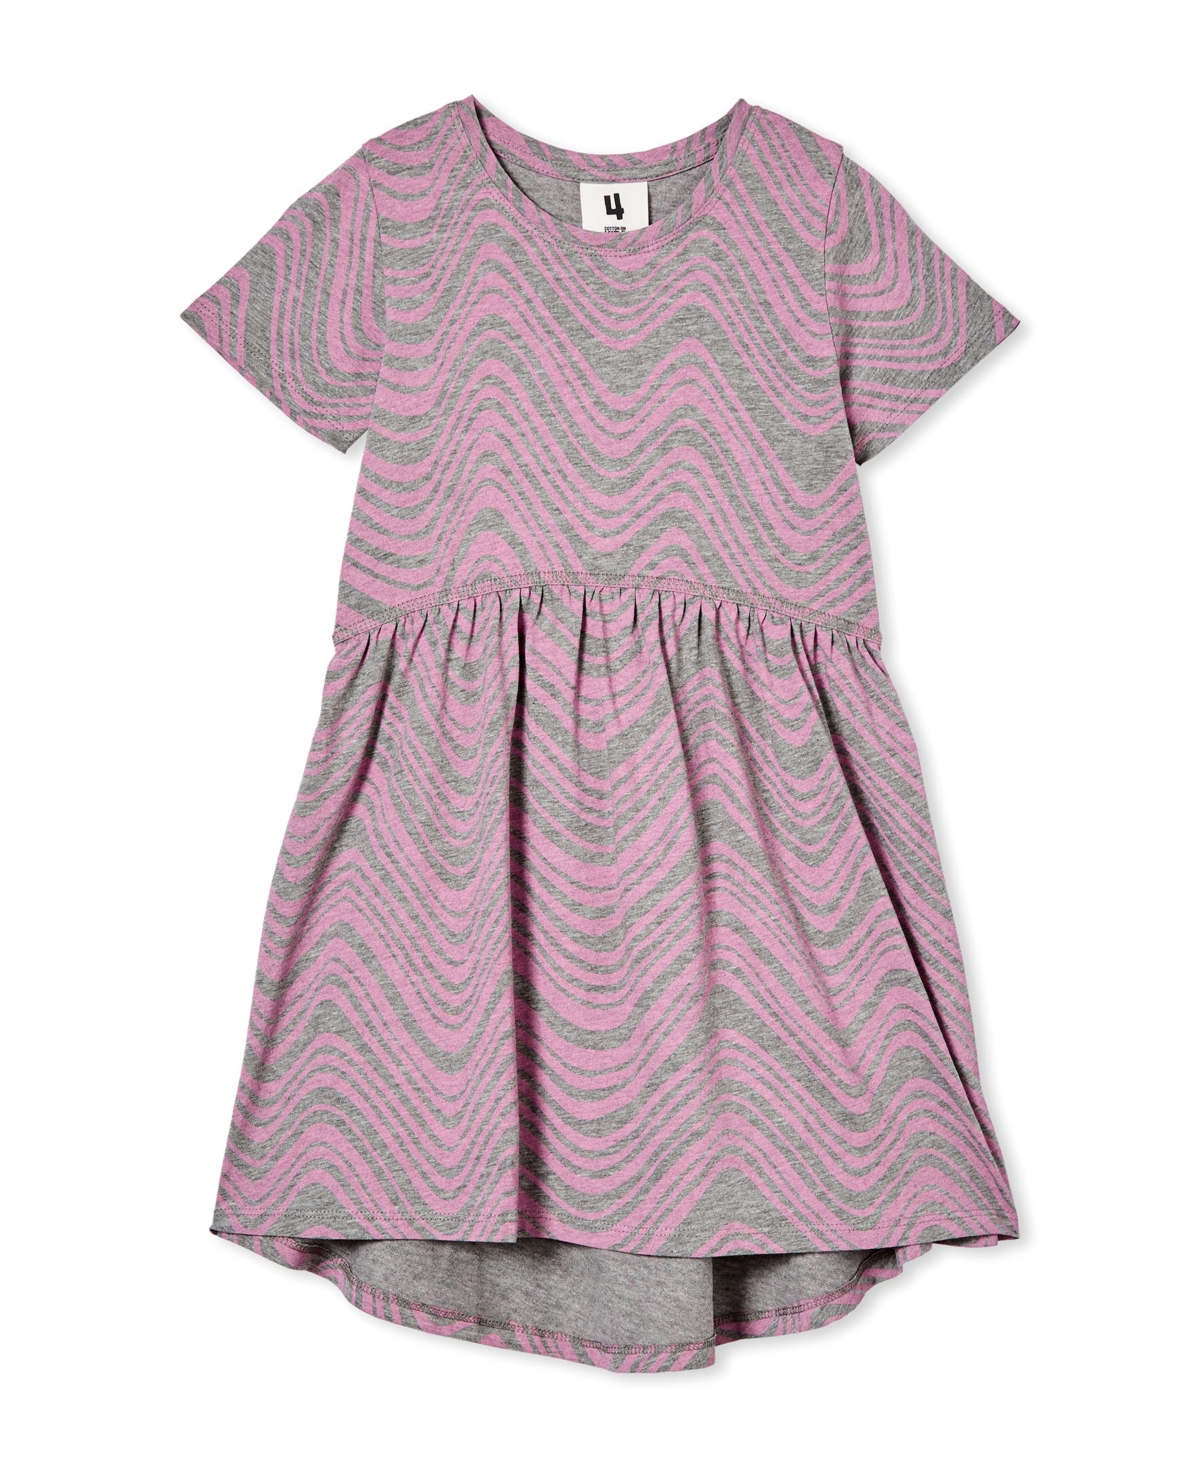 Cotton On Toddler Girls Freya Short Sleeve Dress In Gray Marle/radical Wave